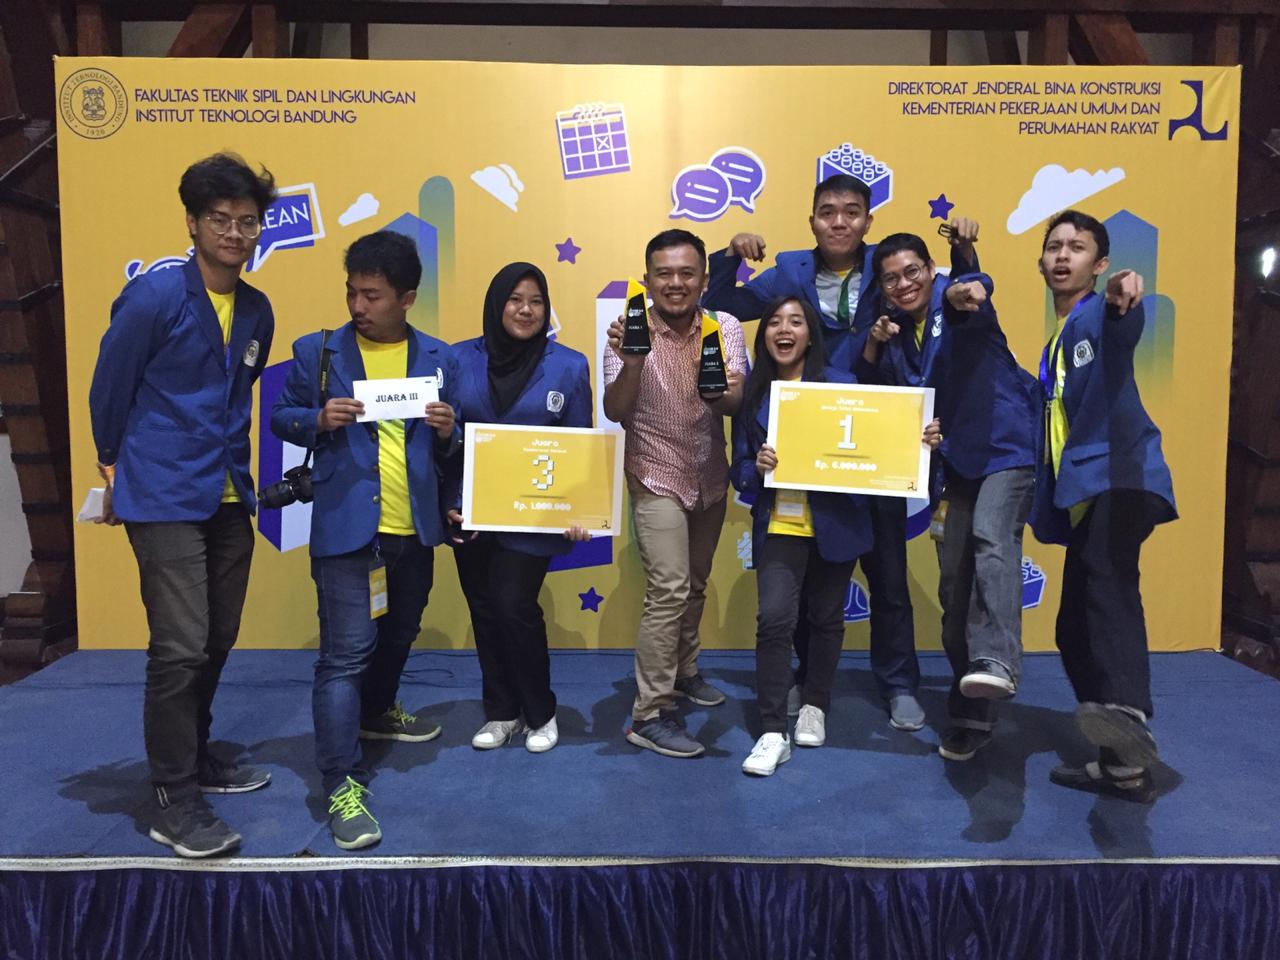 Mahasiswa ITS yang berhasil meraih juara dalam kompetisi konstruksi ramping 3.0. 